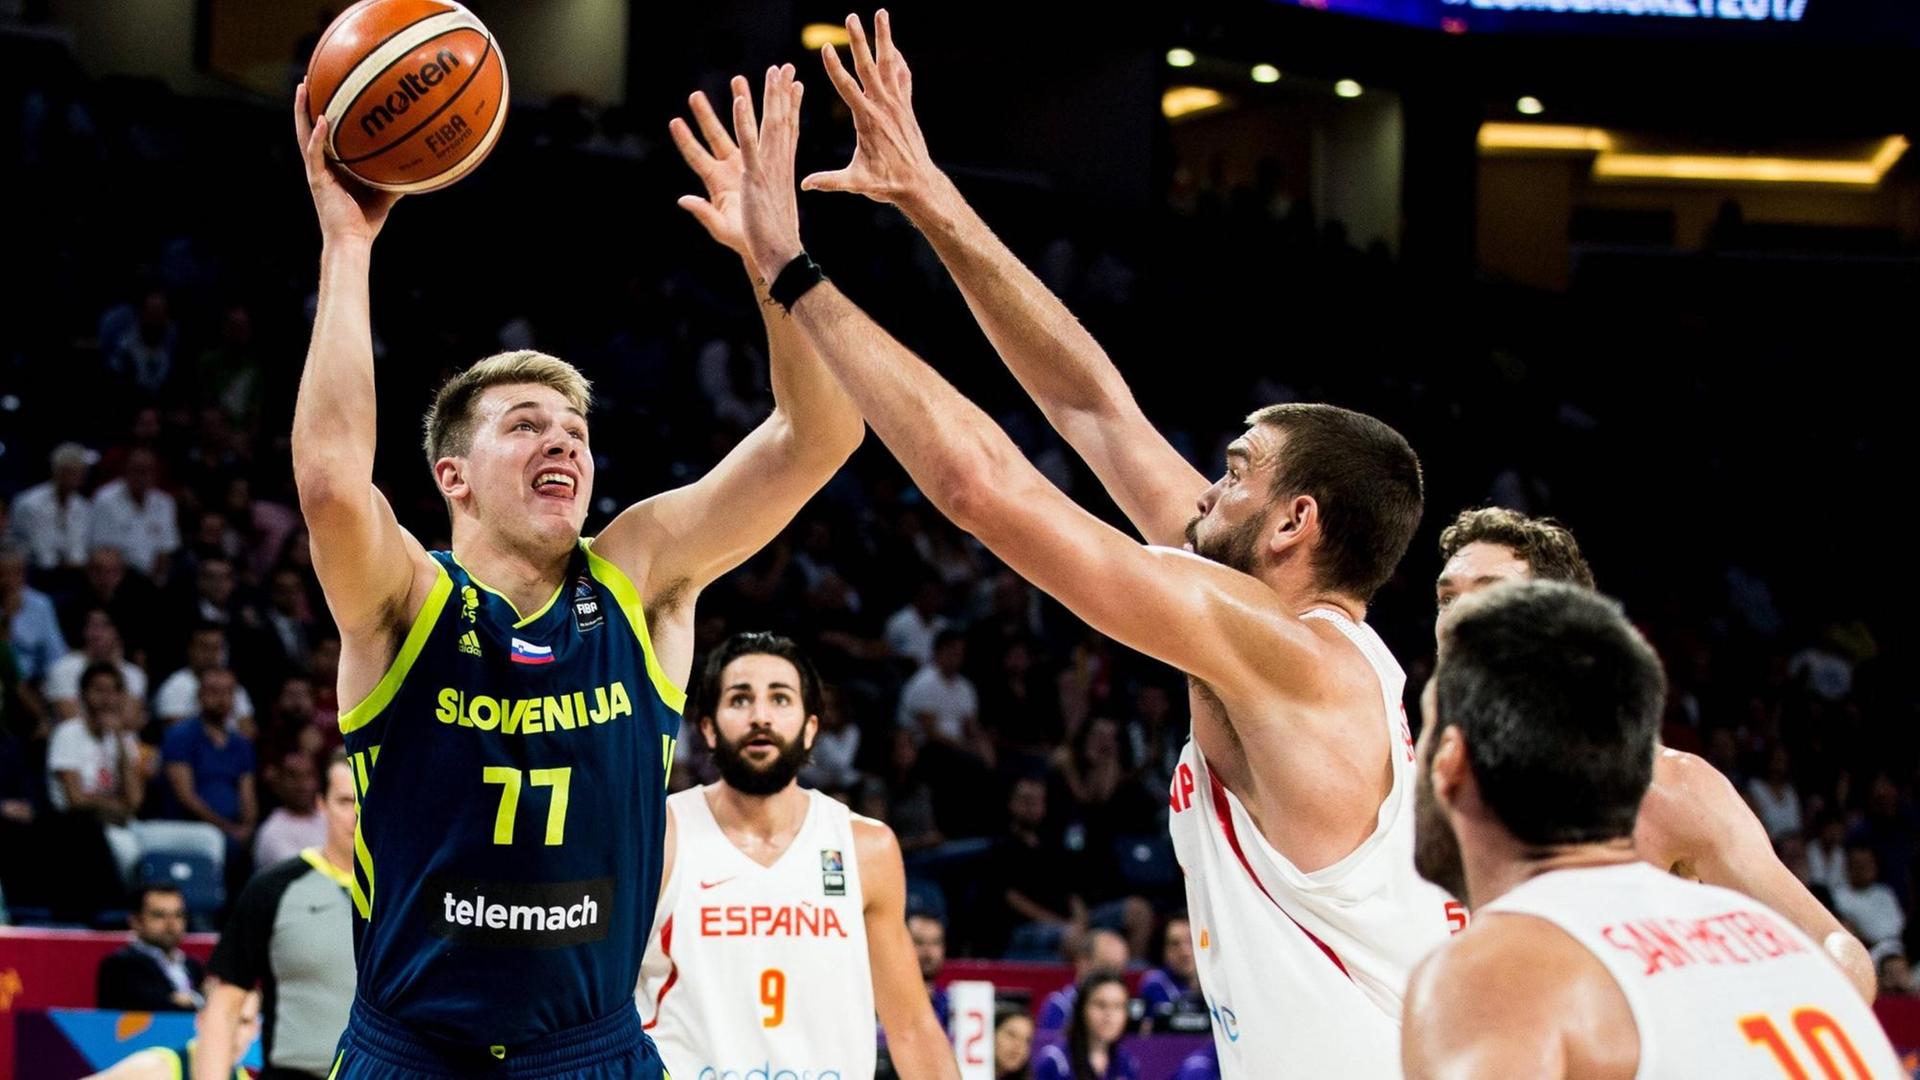 Der Slowene Luka Doncic beim Wurf im Halbfinale der Basketball-EM zwischen Slowenien und Spanien in Istanbul 